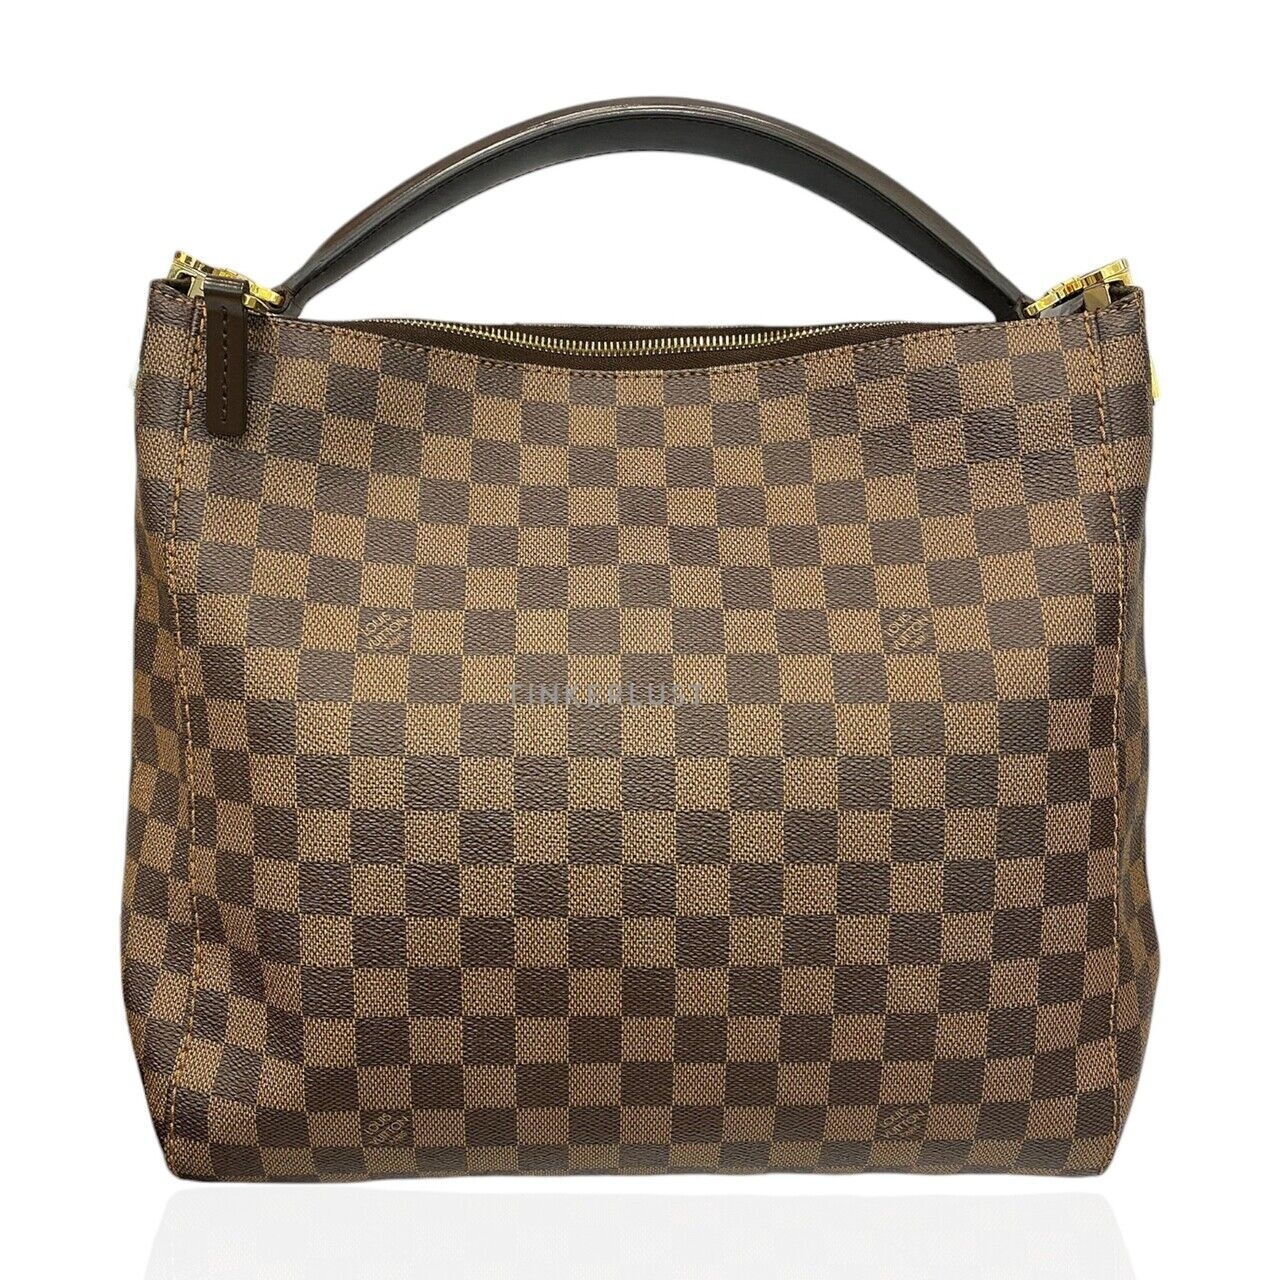 Louis Vuitton Portobello PM Damier GHW 2013 Handbag